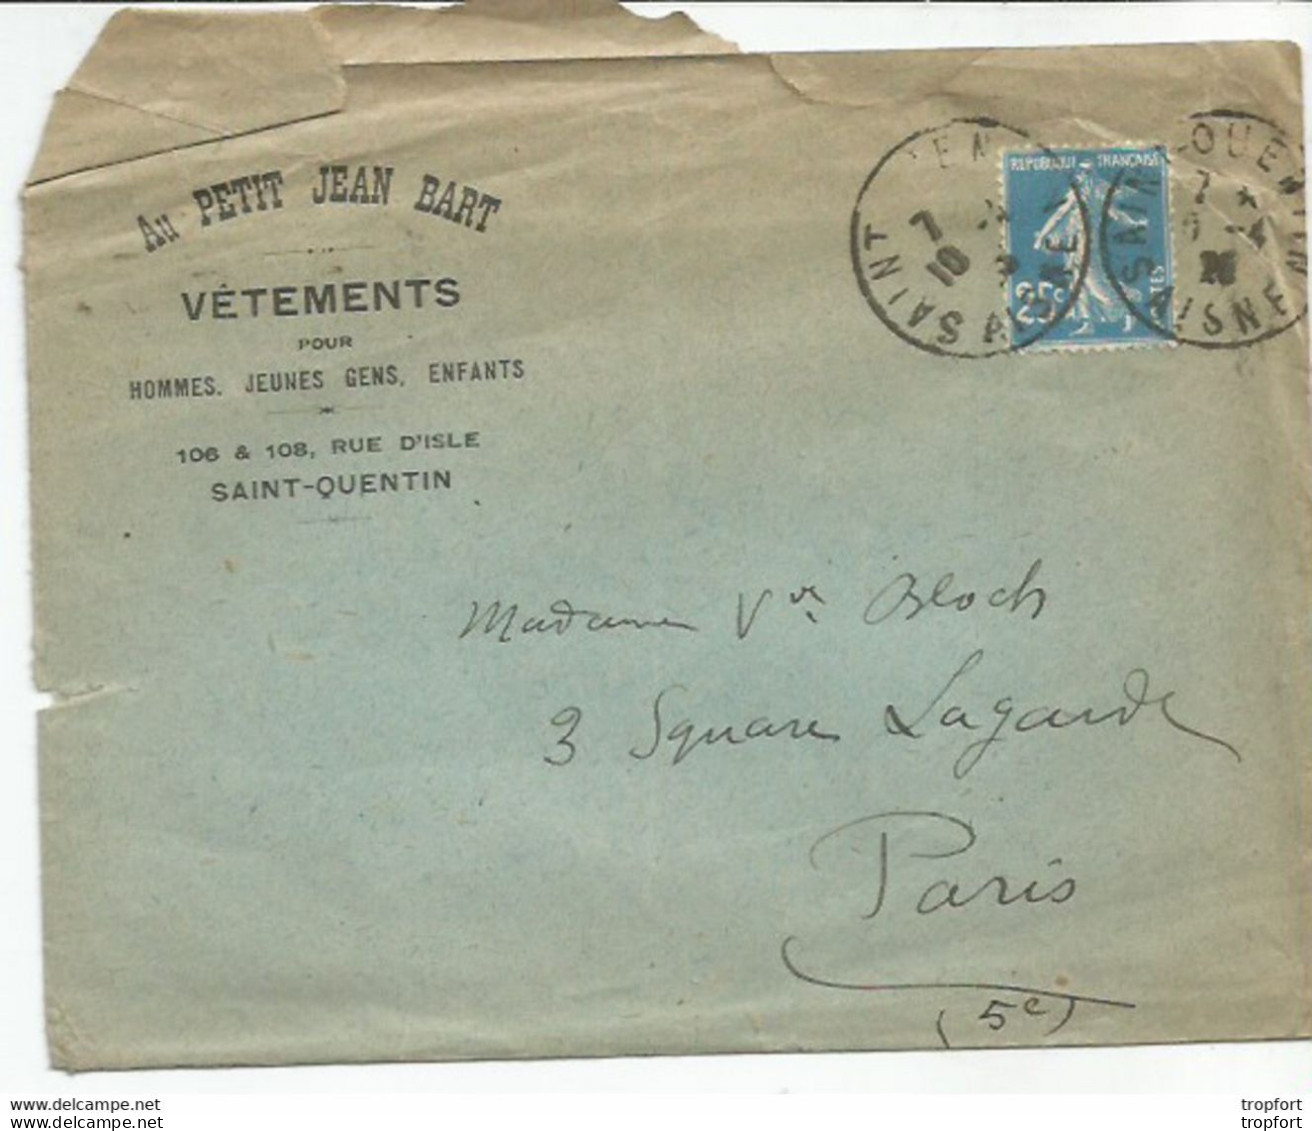 F12 / Enveloppe Publicitaire AU PETIT JEAN BART SAINT-QUENTIN Timbre Marianne 1926 - Reclame